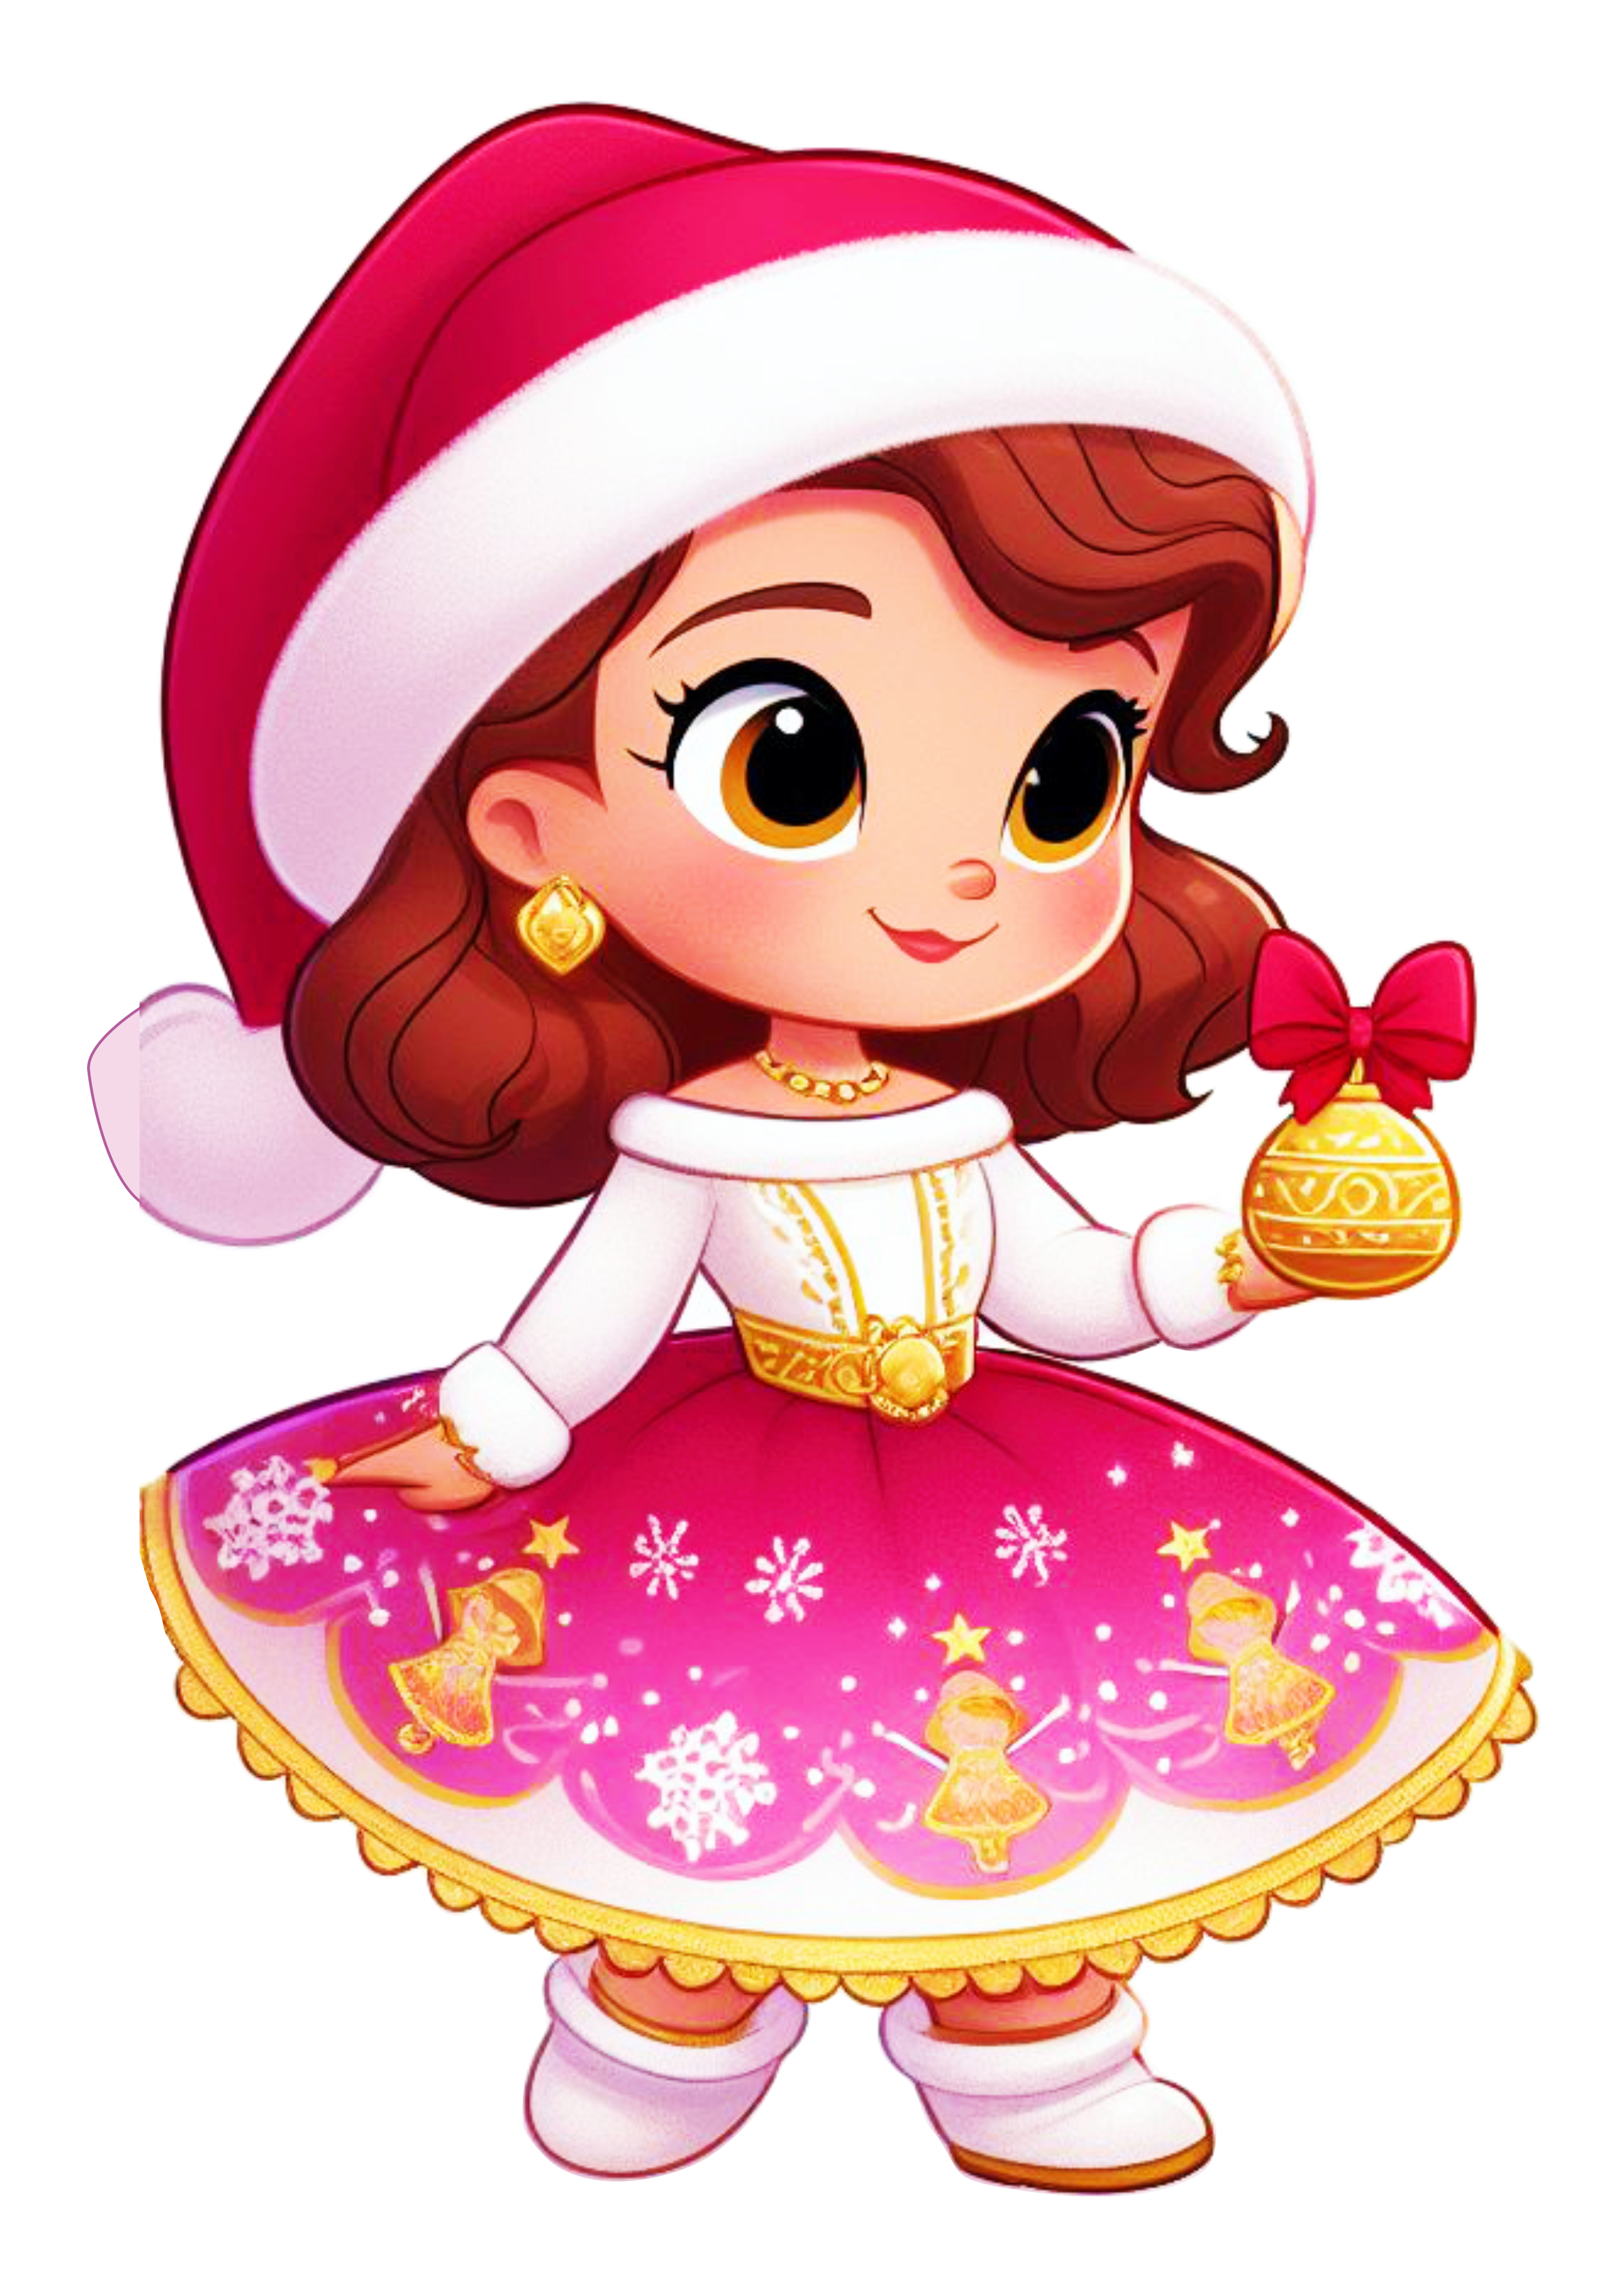 Princesa com roupinha de natal menina desenho ilustração vestido vermelho com dourado png